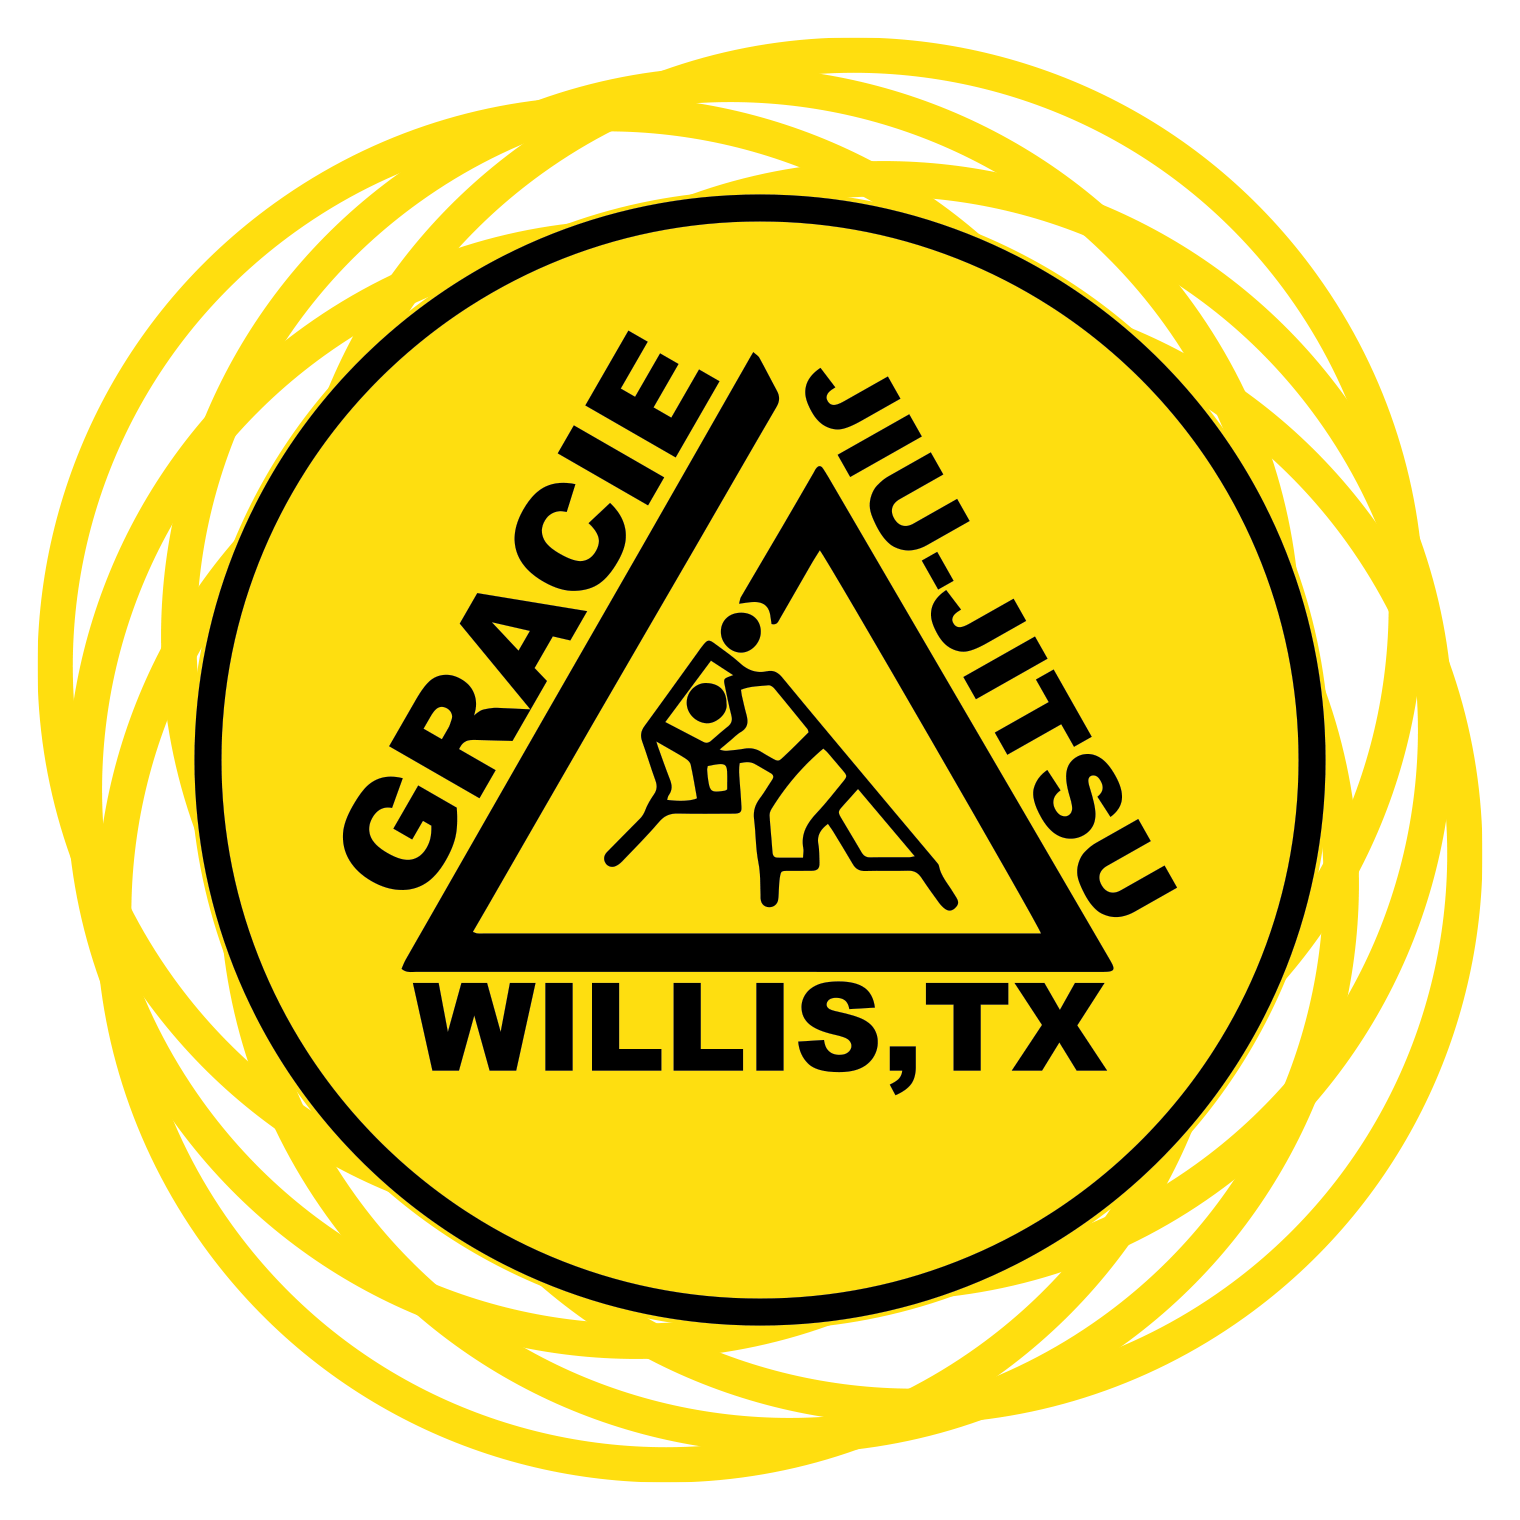 Gracie HumaitÃ¡ Willis, TX